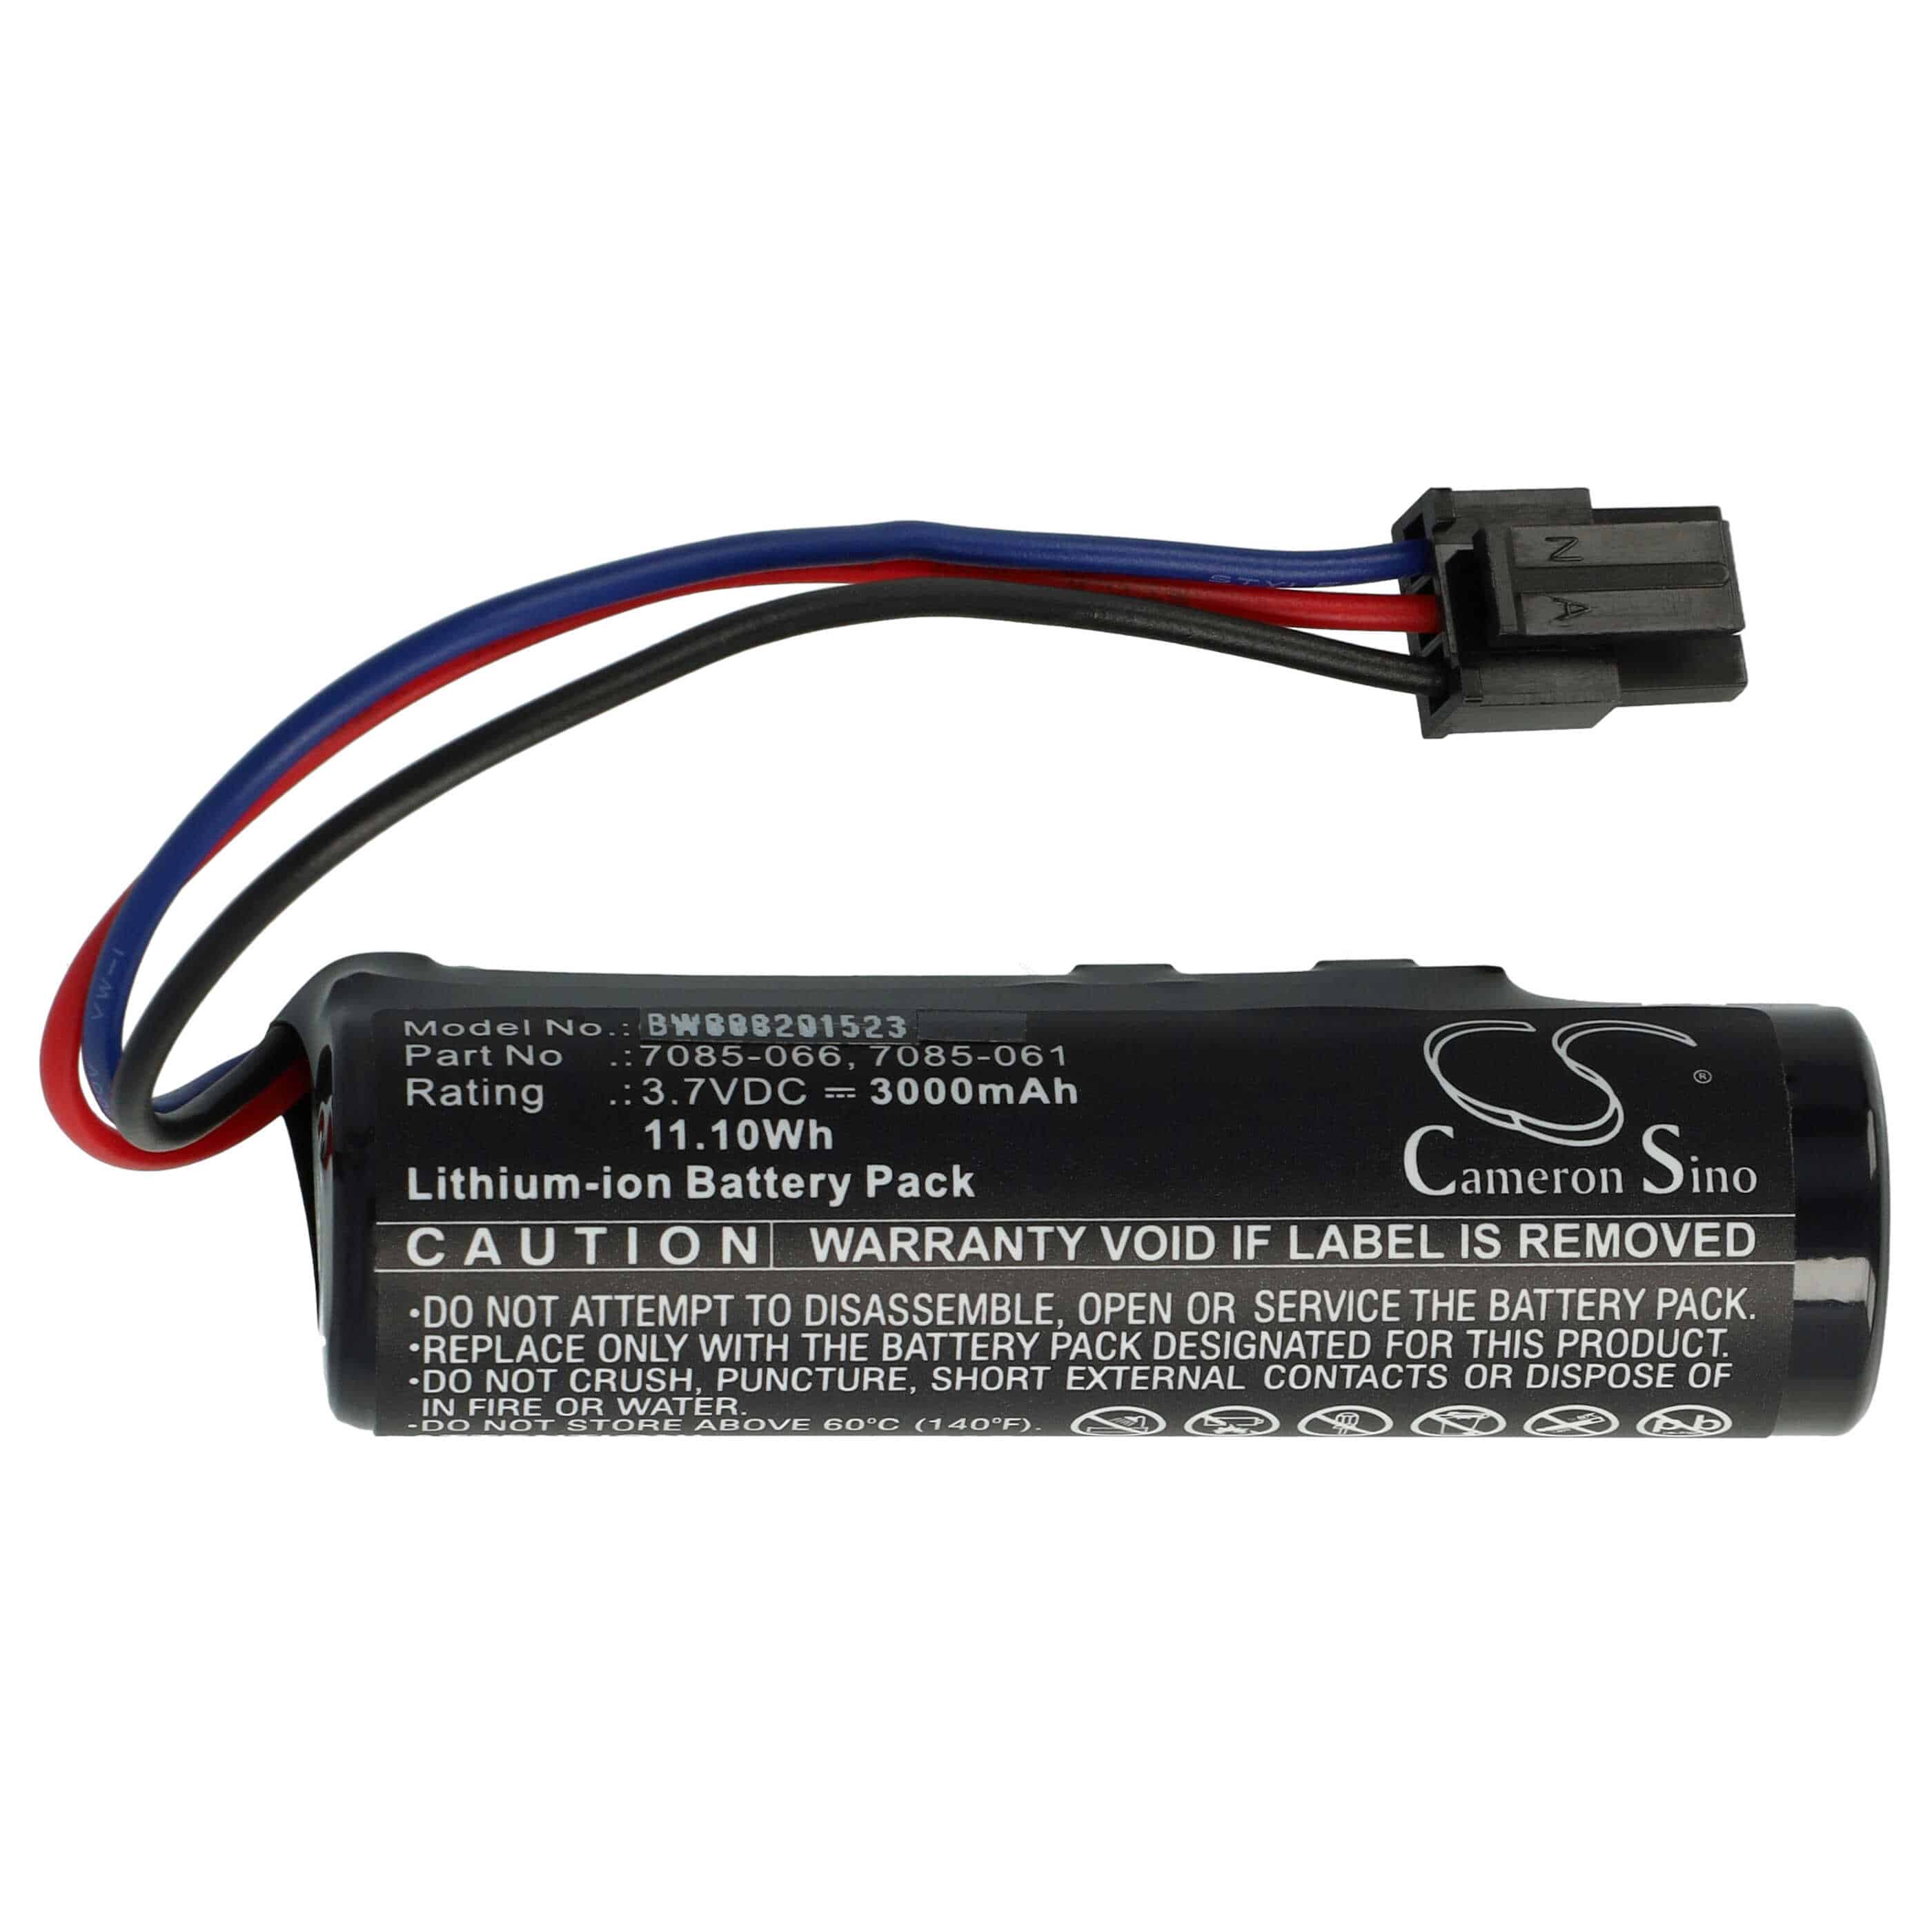 Batterie remplace Wolf Garten 7085-918, 7085-061, 7085-066 pour outil de jardinage - 3000mAh 3,7V Li-ion